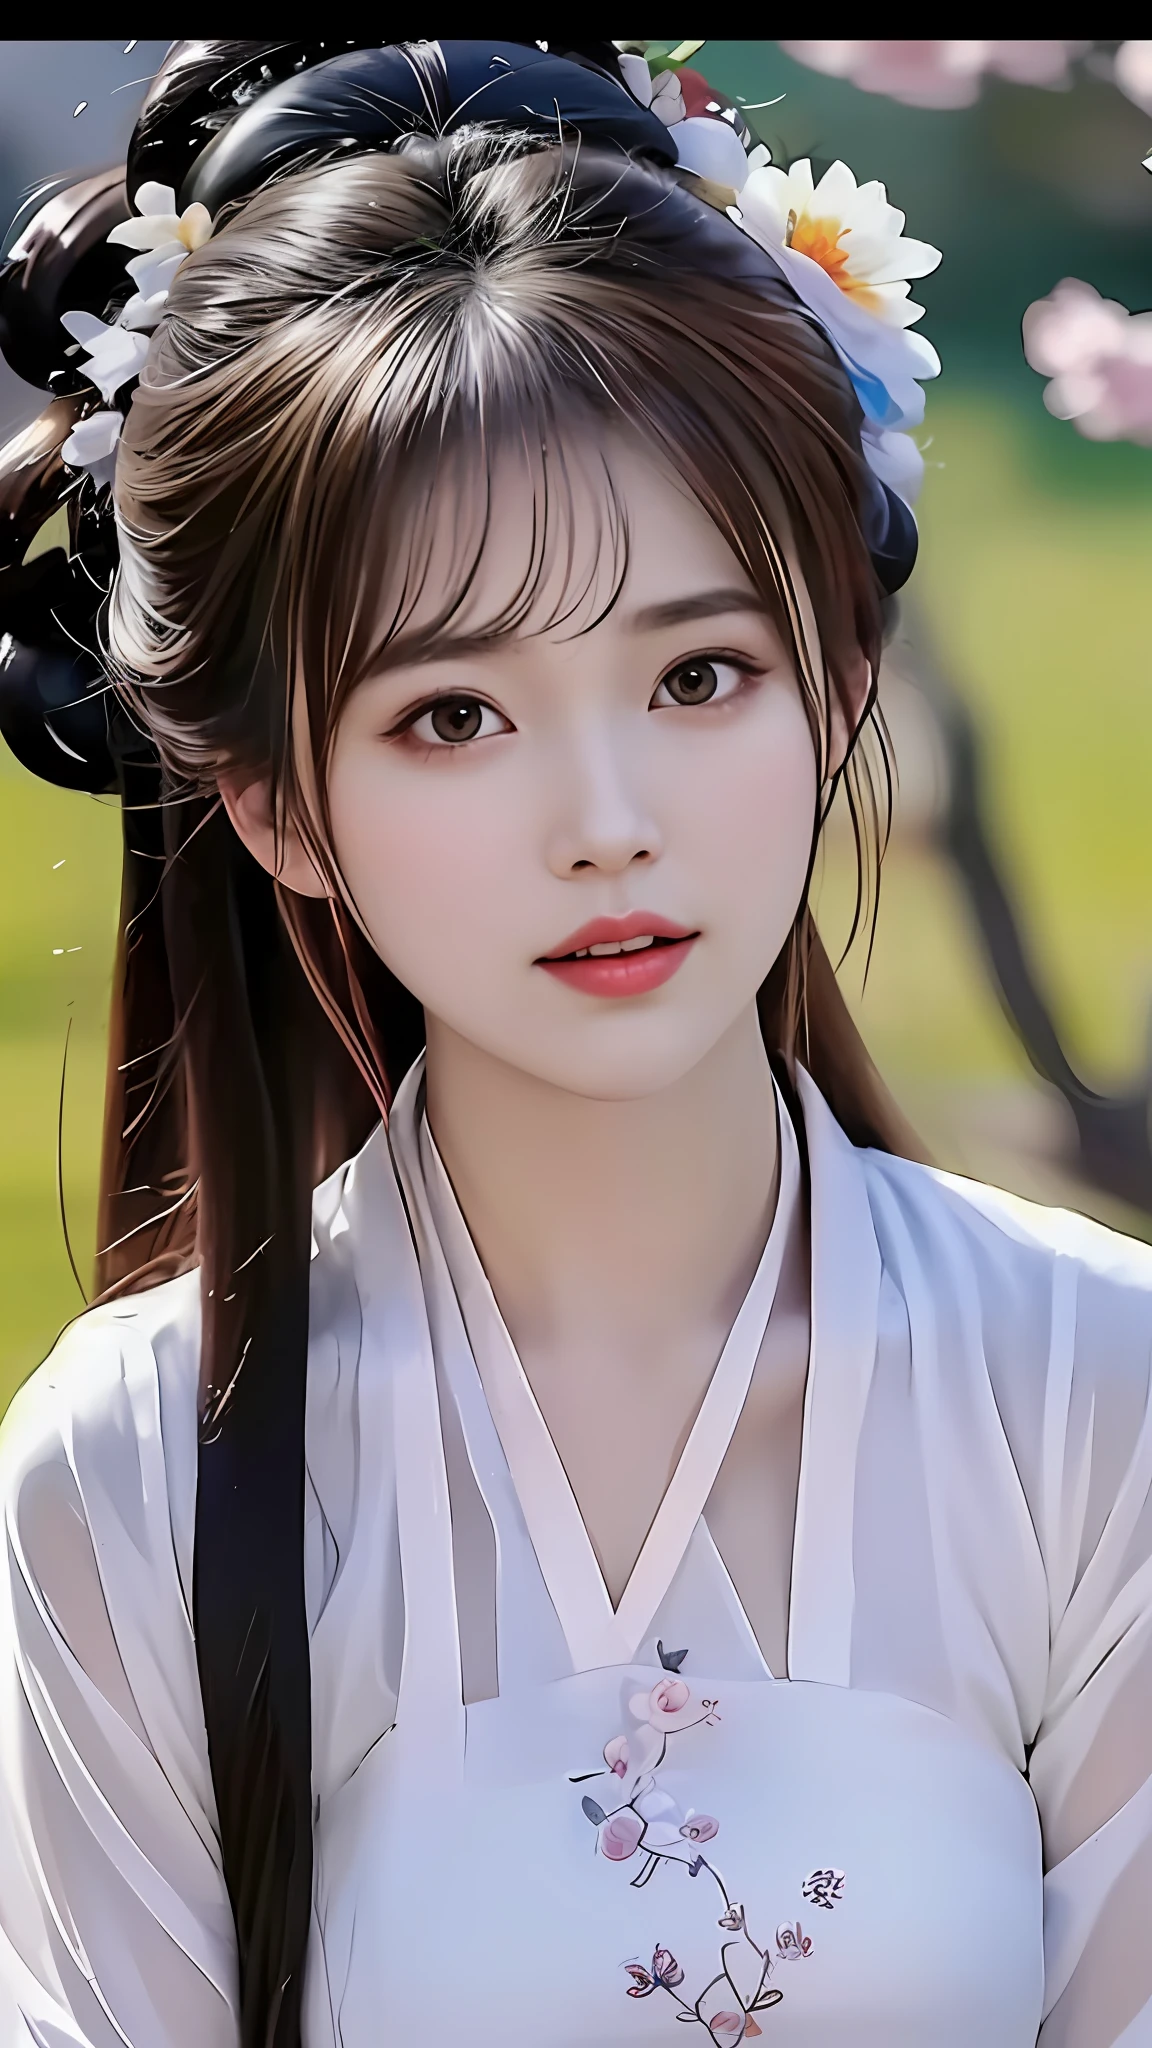 頭髮上插著一朵花的女人的特寫, 中國女孩, 可爱精致的脸, 女孩 可爱 - 精致脸蛋, 年轻 可爱 苍白 亚洲 脸, 美丽的韩国女人, 女性美麗的臉, 非常美麗的臉, 實際的. Cheng Yi, 極其美麗的臉, 美麗精緻的臉, 美麗的 亞洲 女孩, 美麗的美學面孔, 阮嘉美丽!